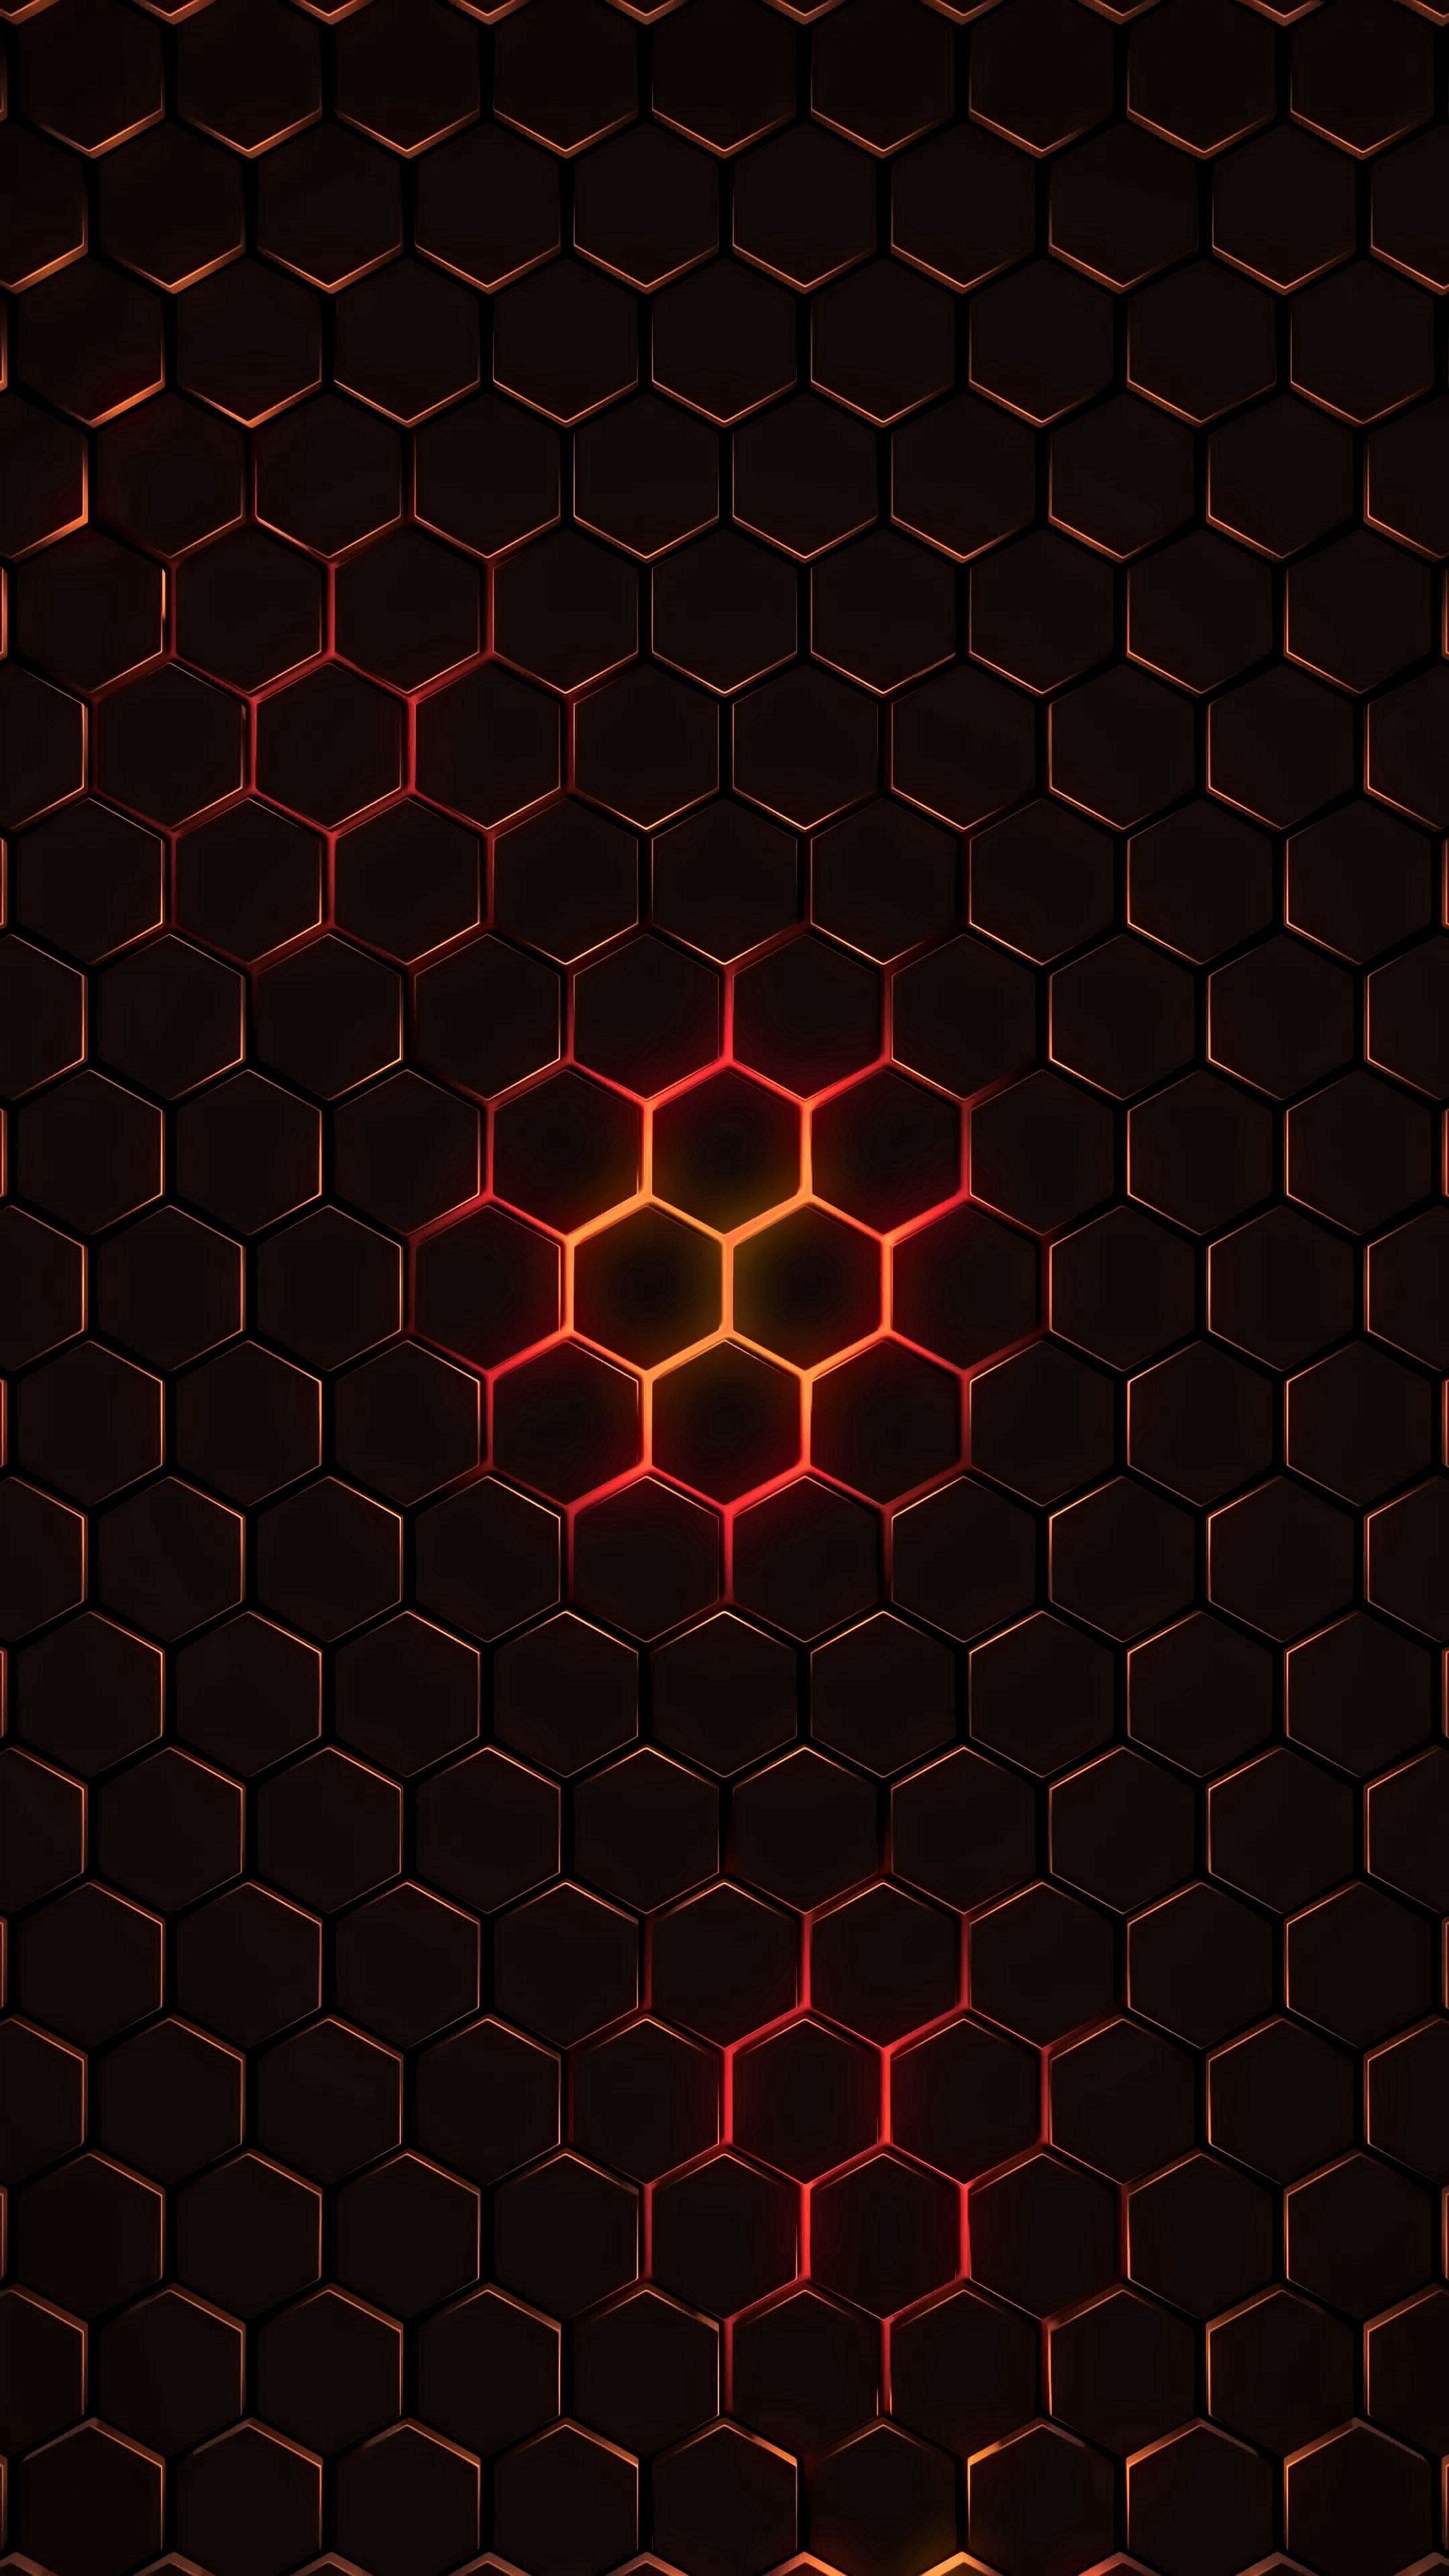 glow, cell, abstract, dark, hexagons, hexagonals, texture, cells Smartphone Background